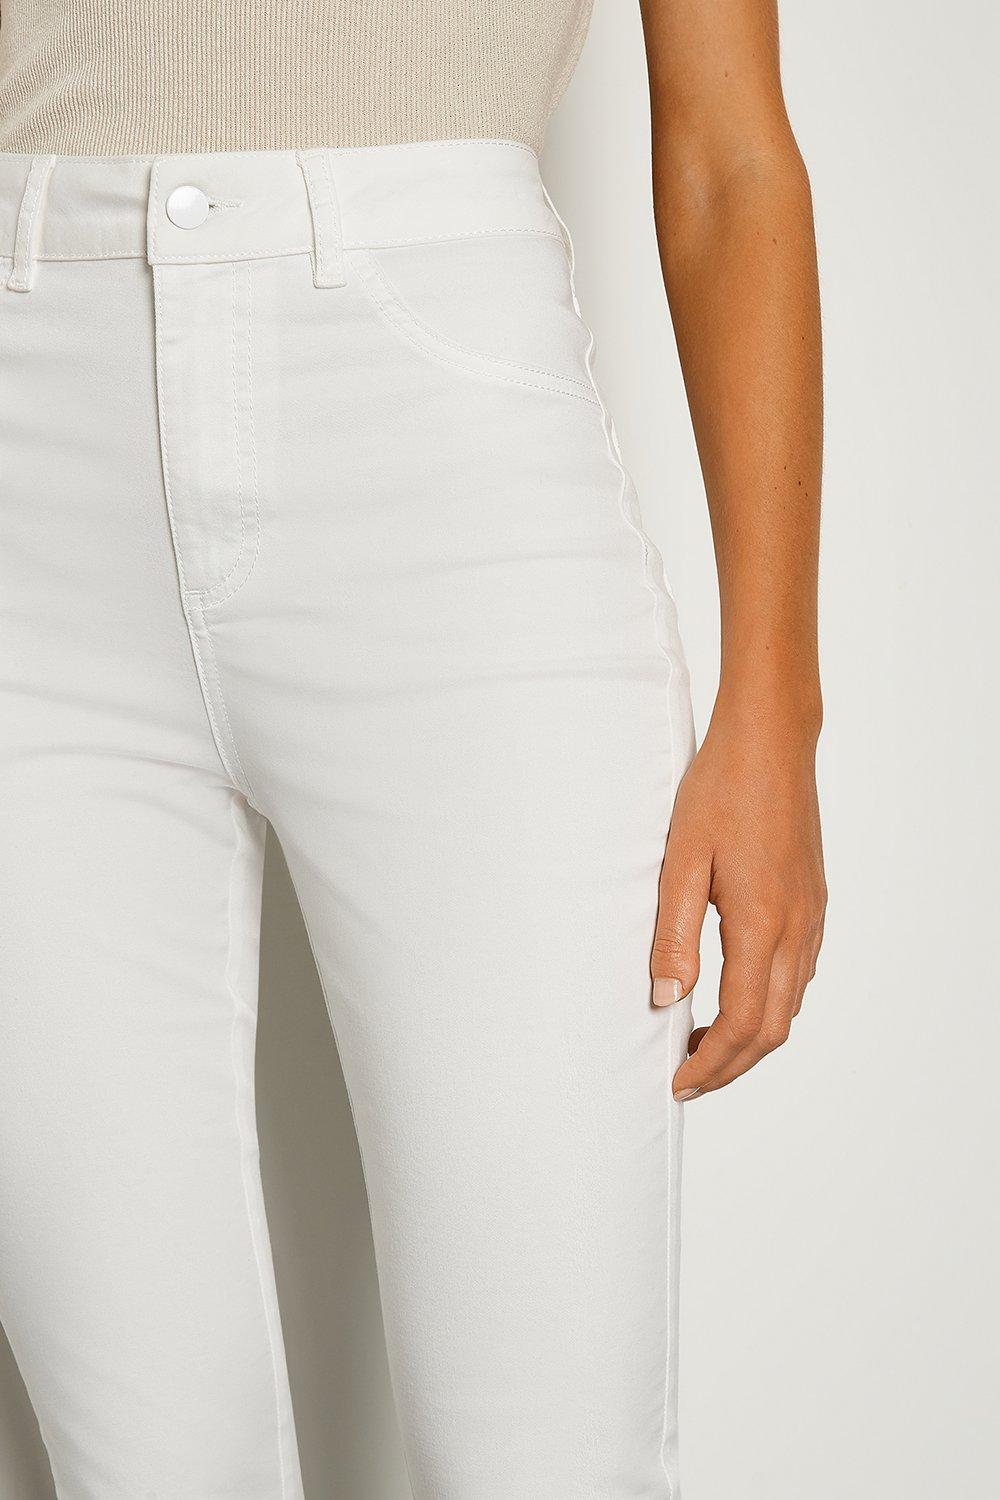 capri jeans skinny